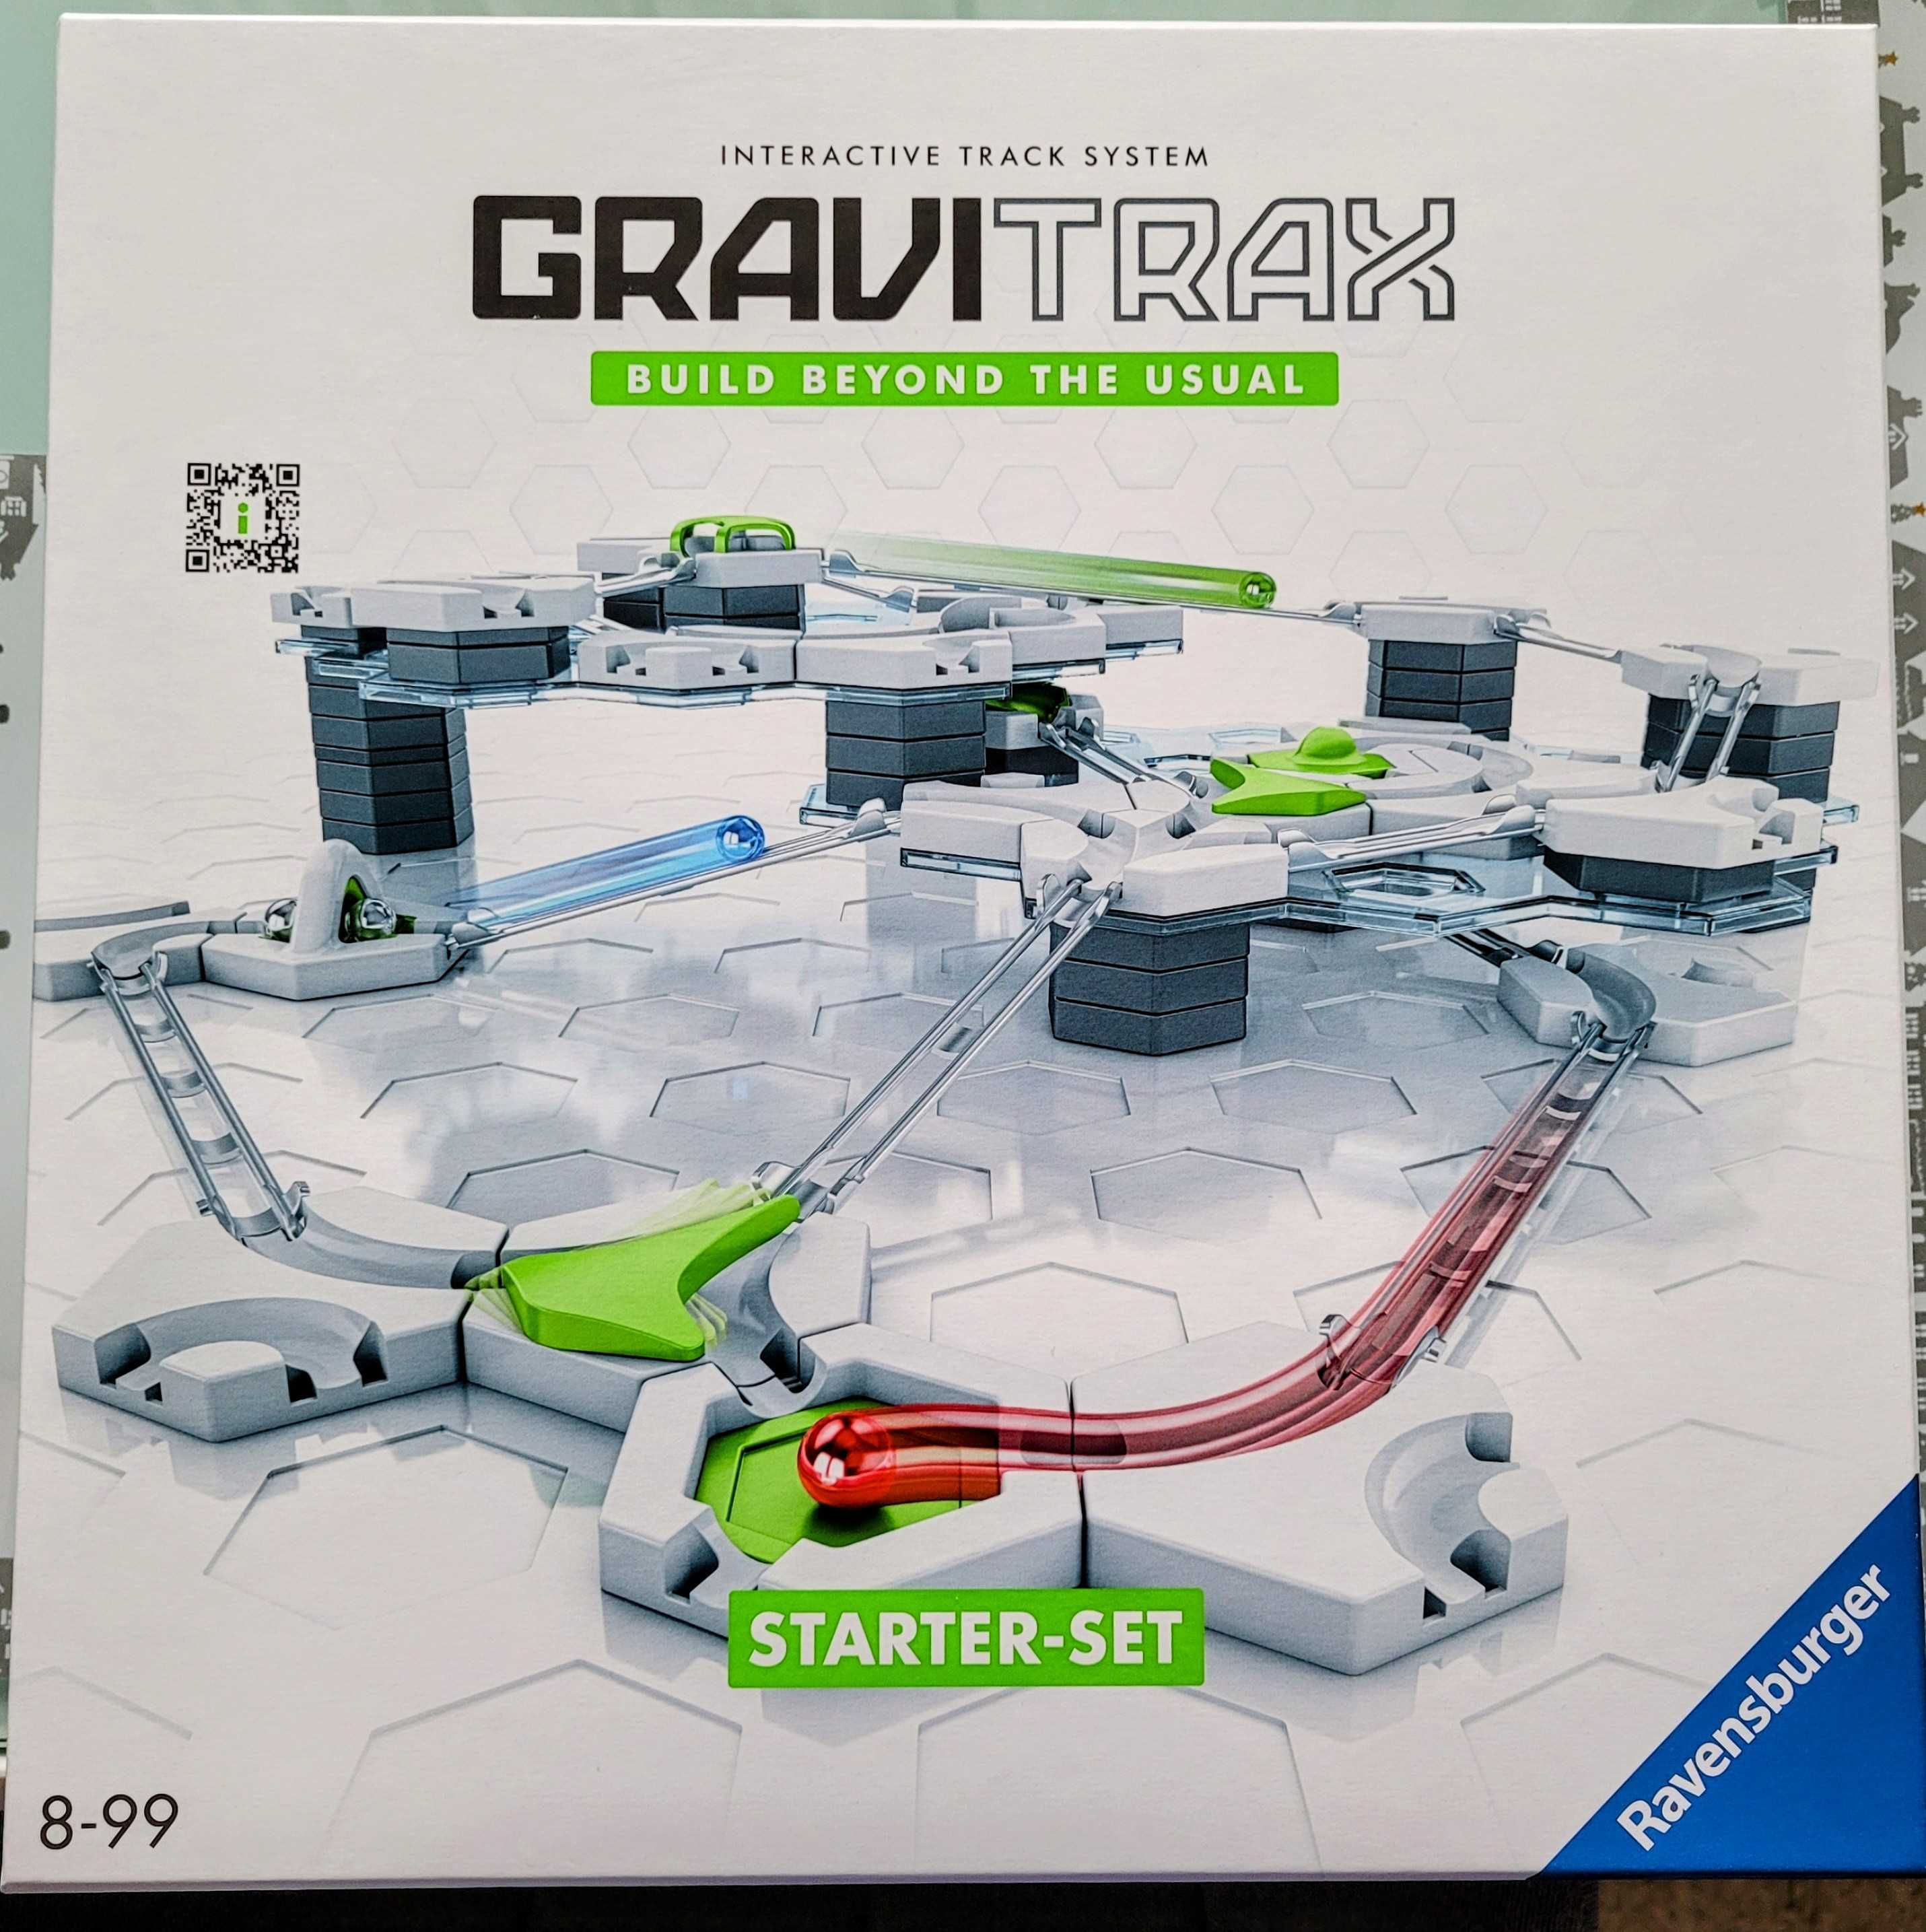 Zestaw startowy GRAVITRAX, tor kulkowy, klocki konstrukcyjne